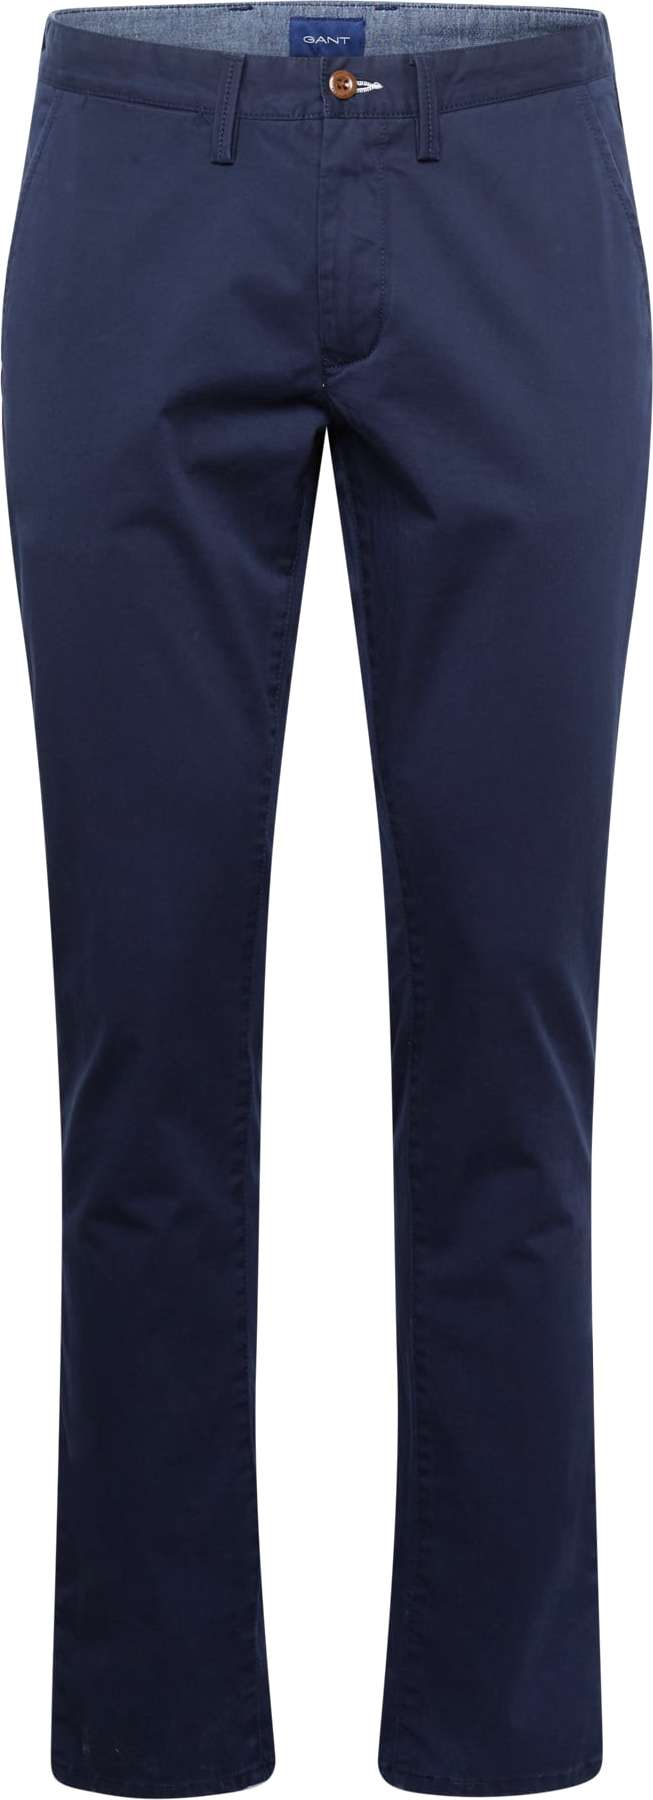 GANT Chino kalhoty marine modrá